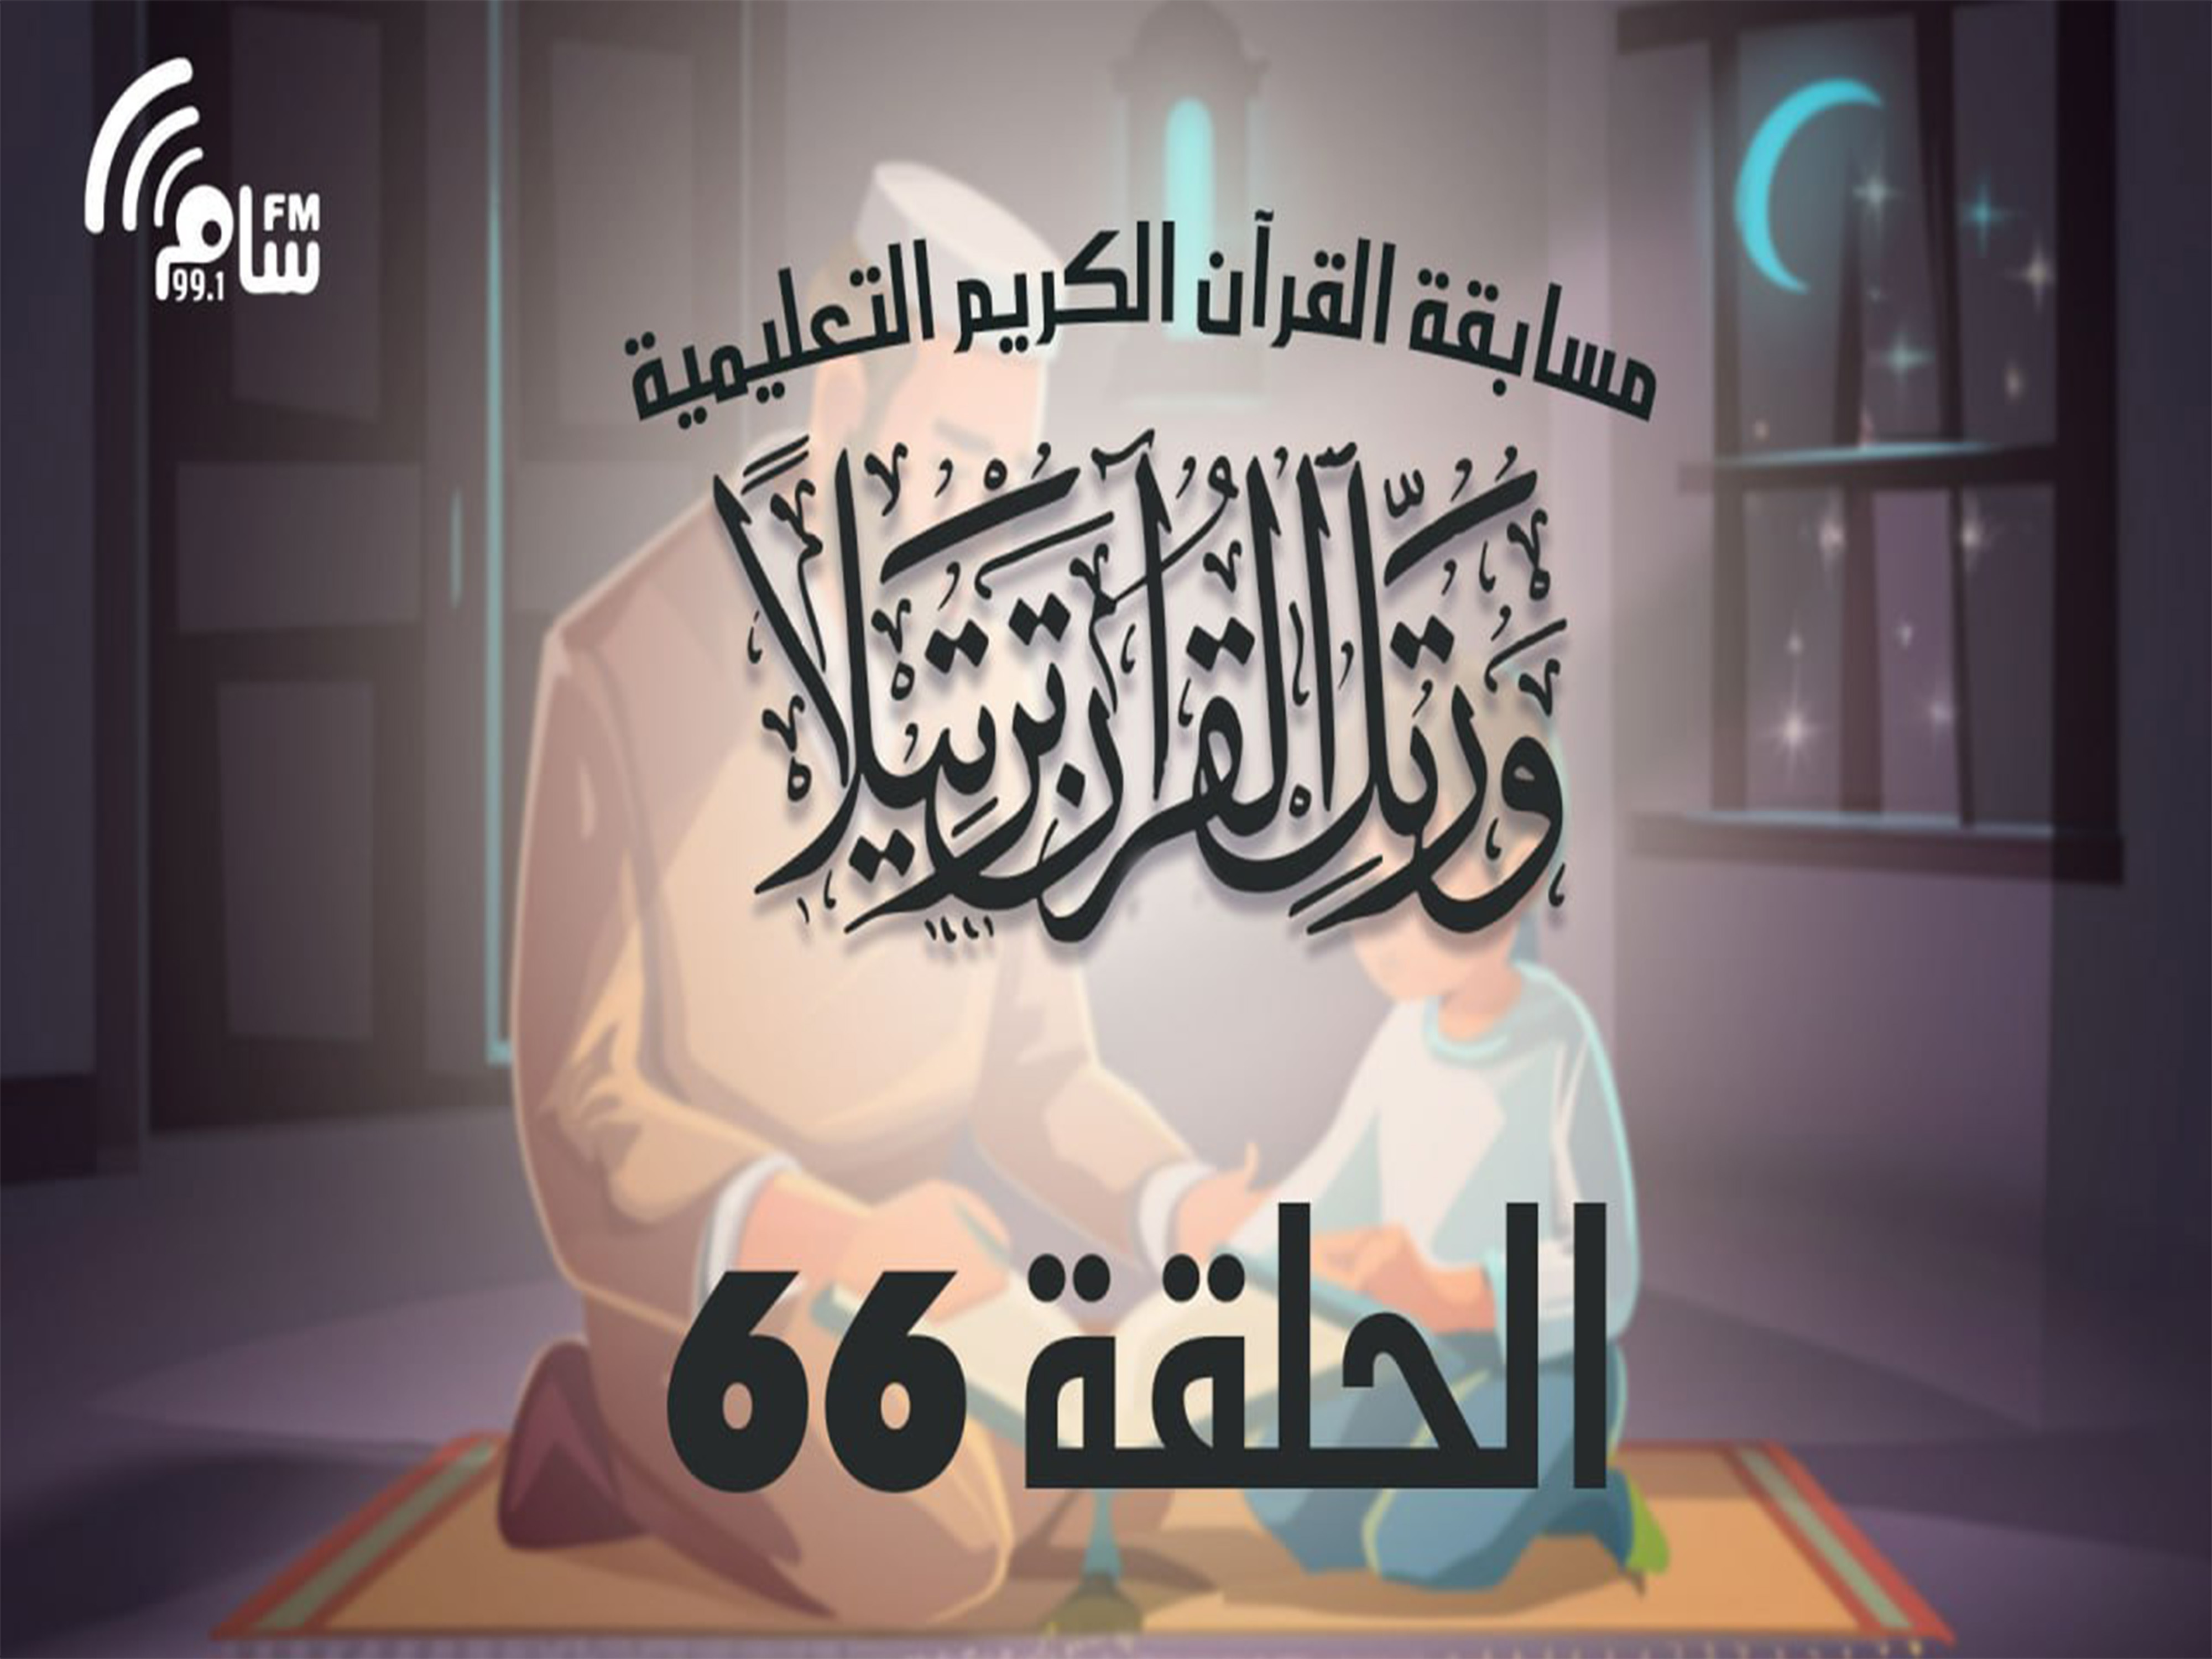 مسابقة القرآن الكريم الحلقة 66 انتاج اذاعة اسام اف ام